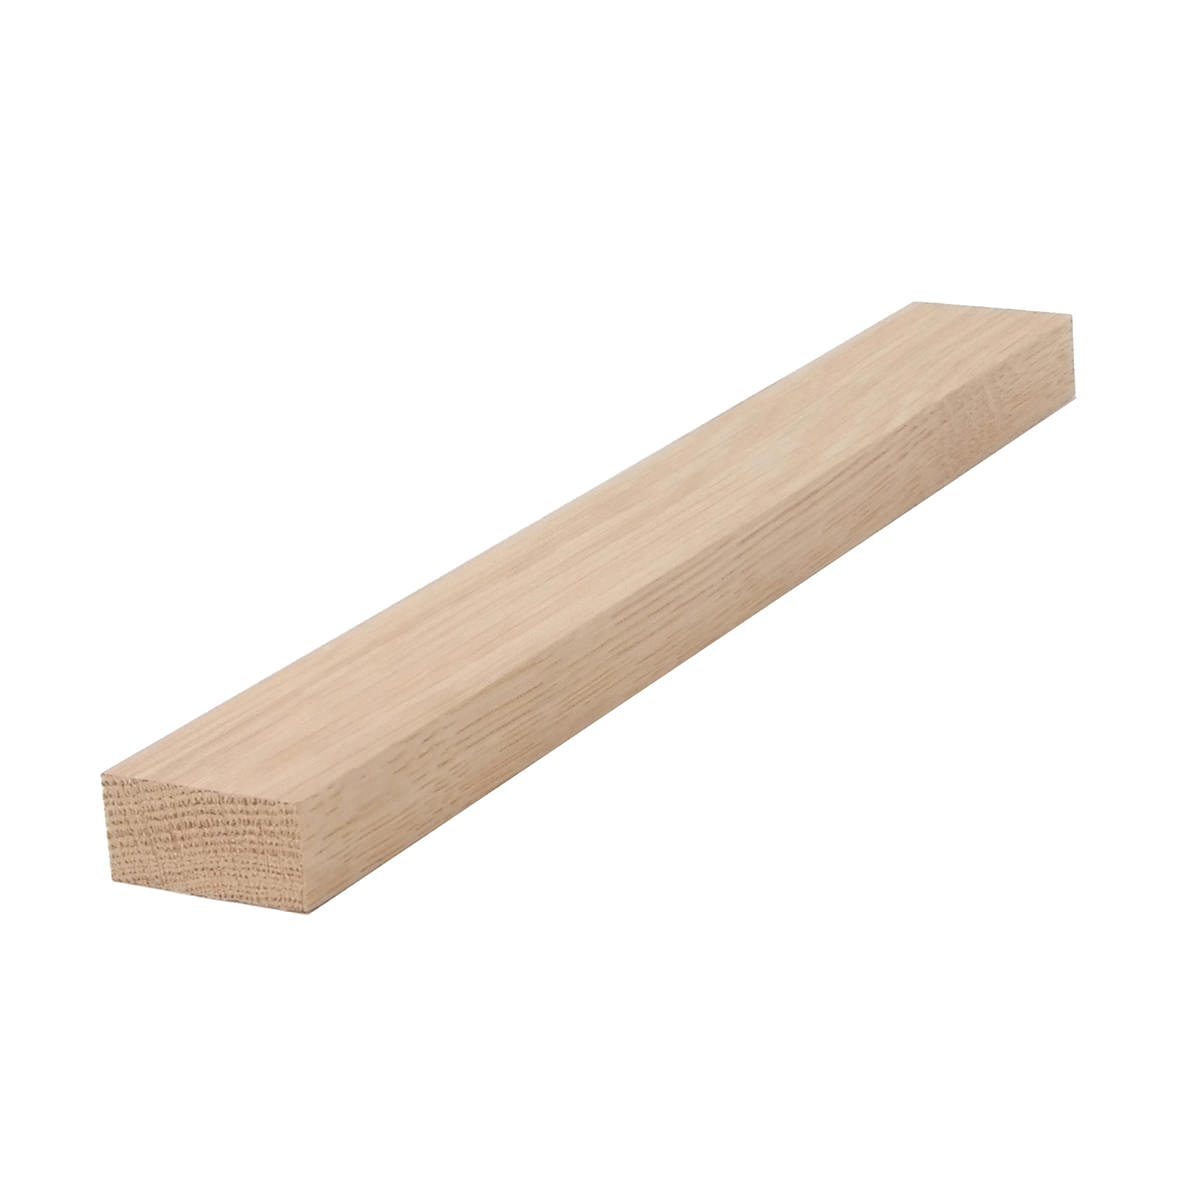 1x2 (3/4" x 11/2") White Oak S4S Lumber, Boards, & Flat